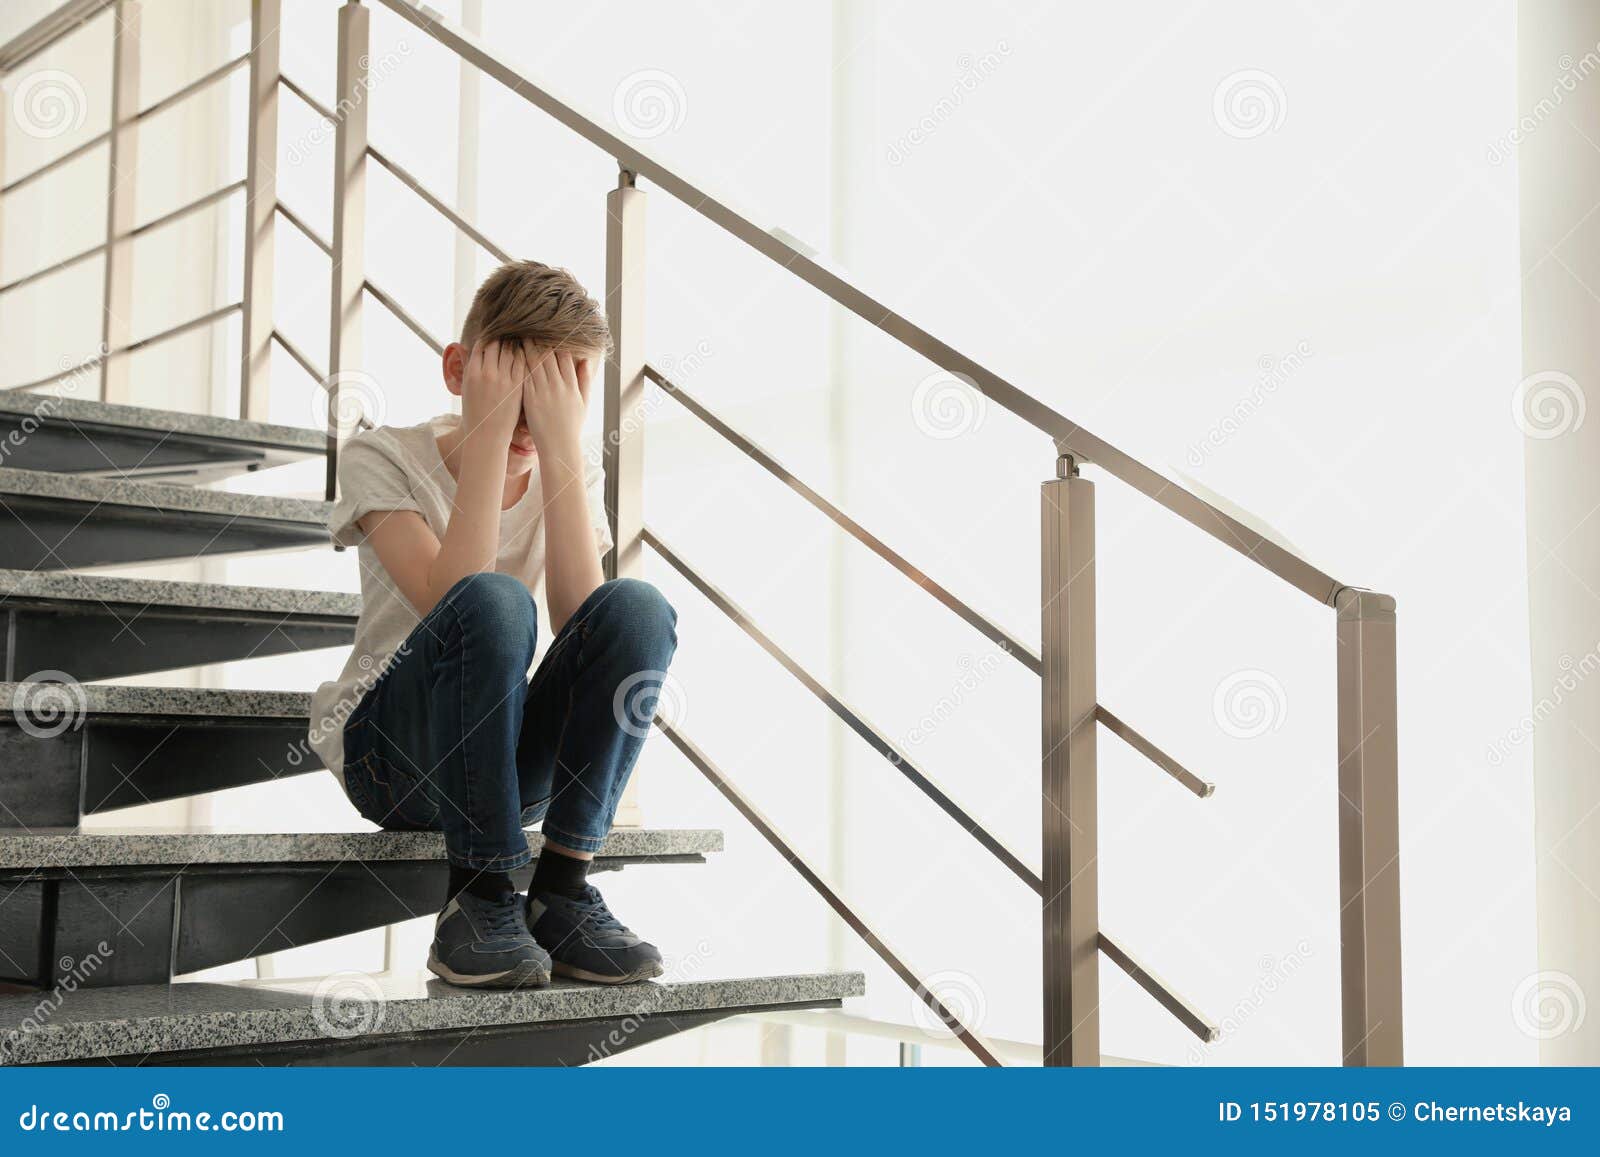 一个男孩痛苦地坐在地板上, 抱着膝盖, 在白色的背景上孤独地哭泣高清摄影大图-千库网